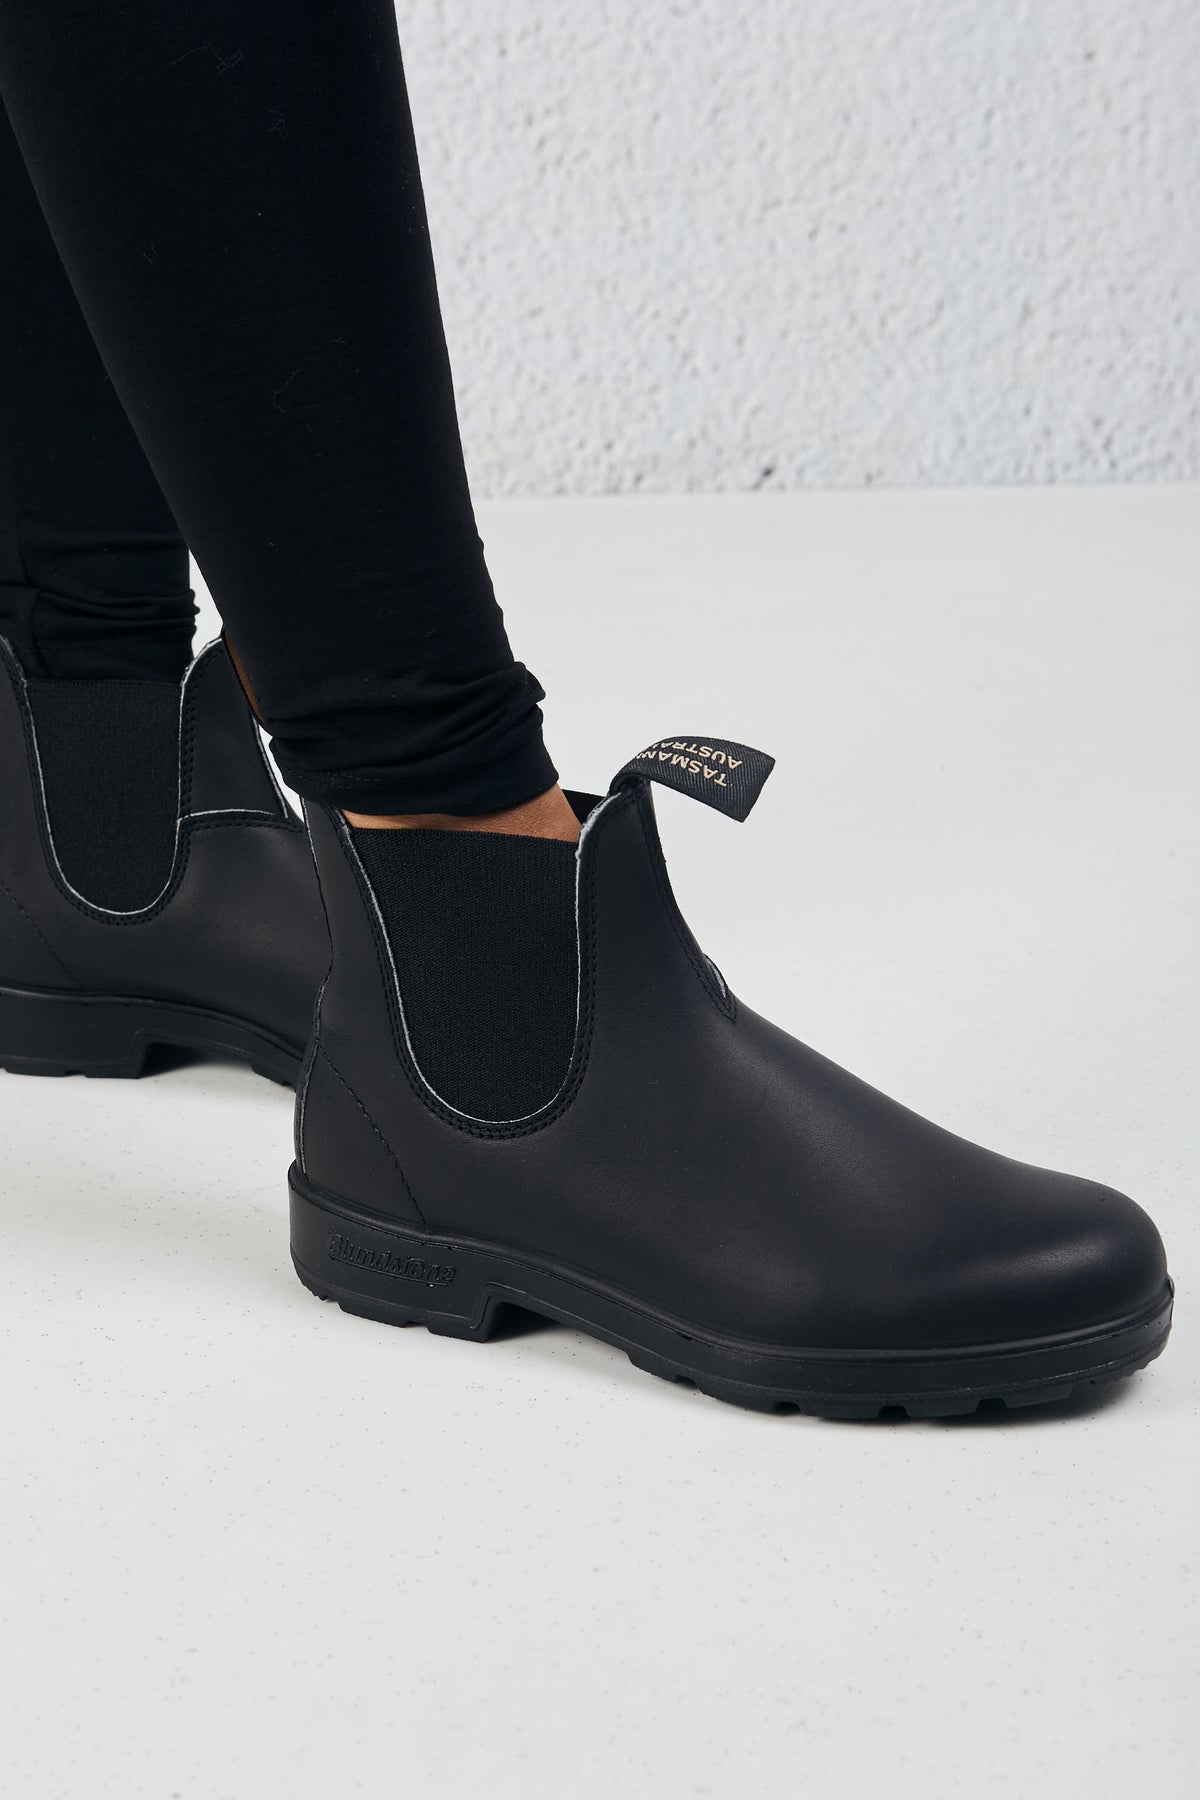 Blundstone Boot Black Leather Nero Donna - 1